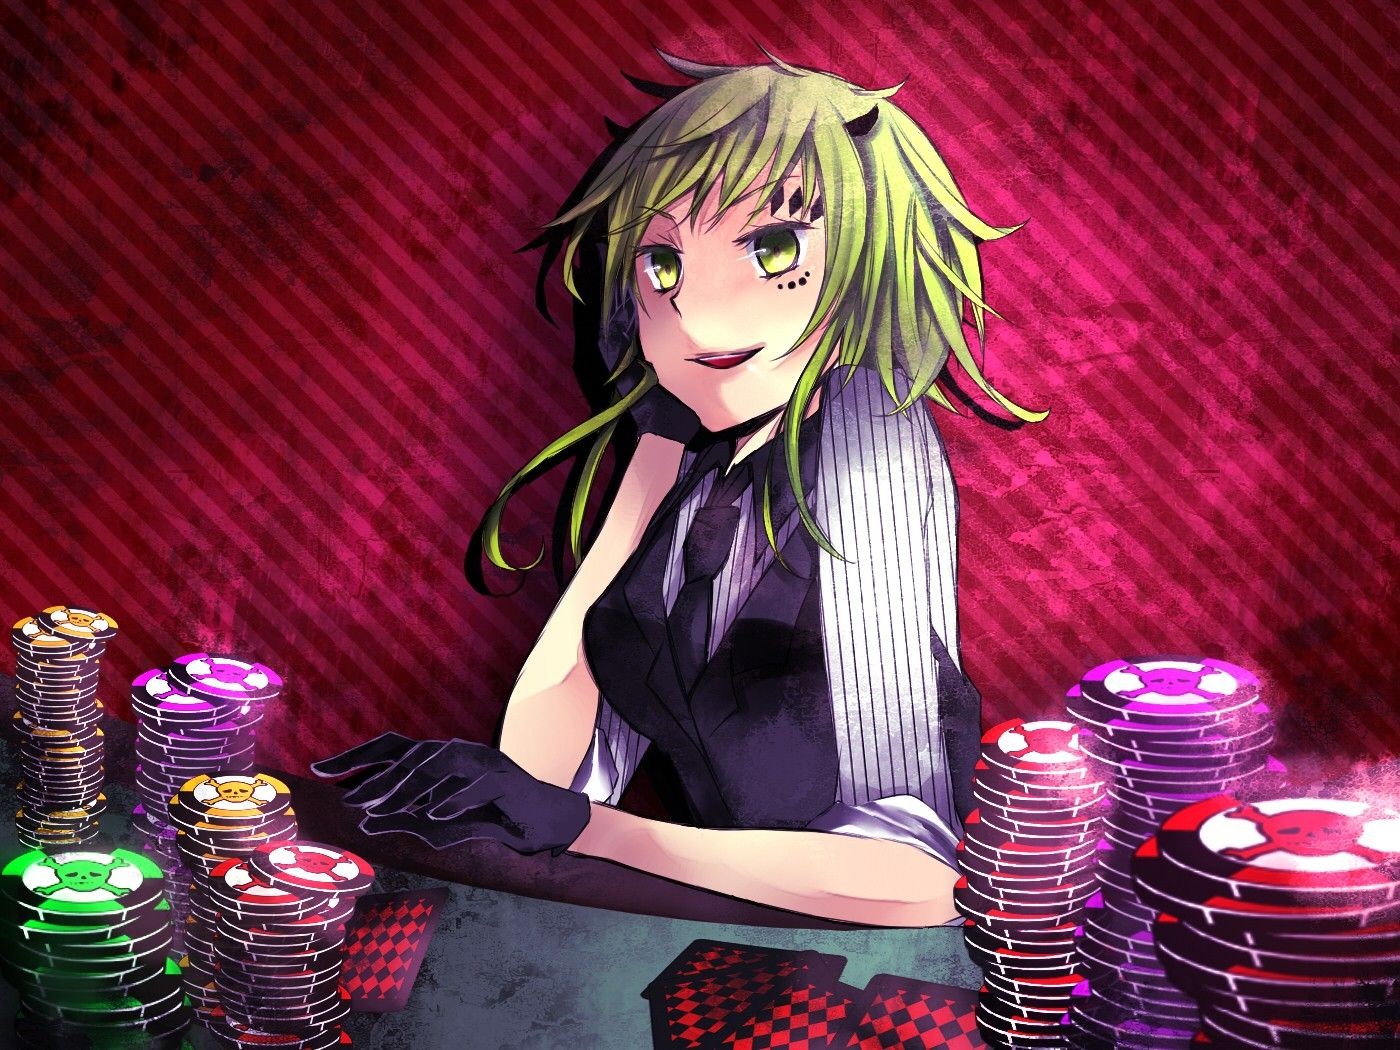 Anime 1400x1050 poker gloves green eyes green hair red background tie anime anime girls